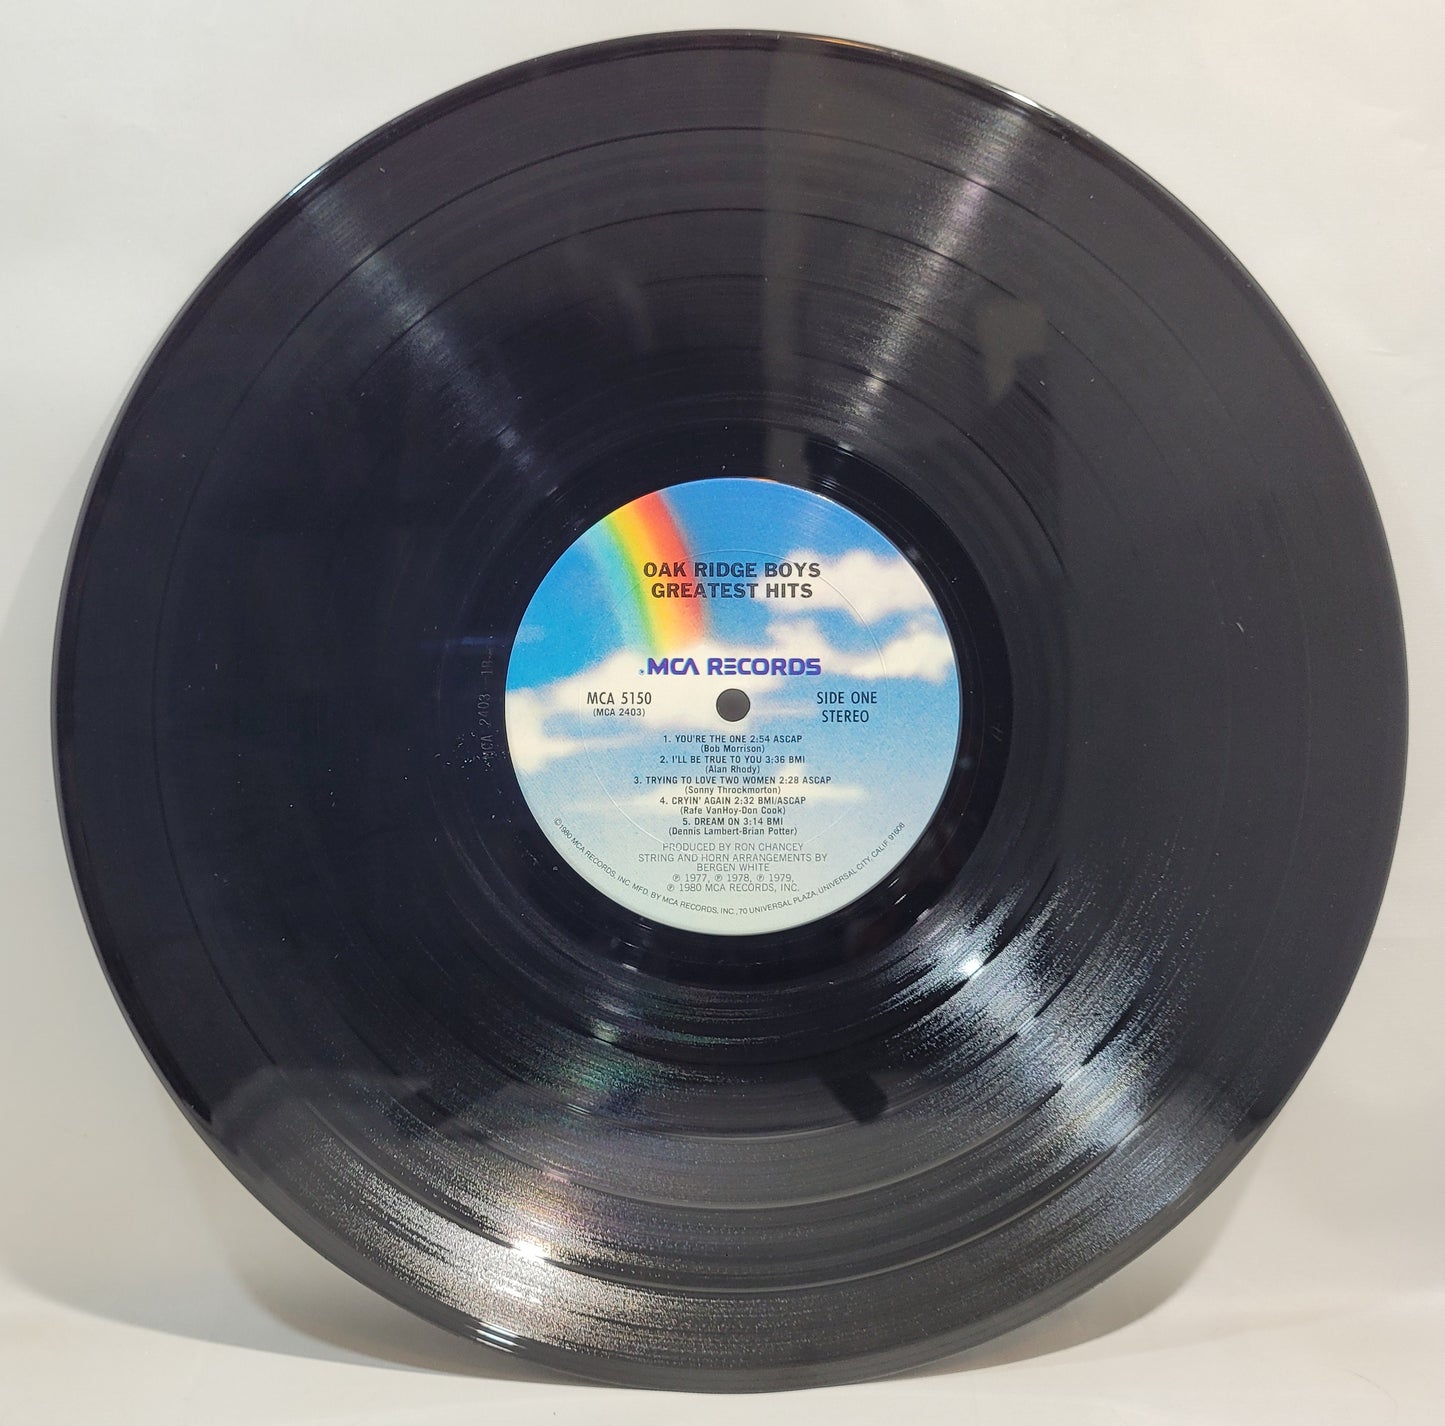 The Oak Ridge Boys - Greatest Hits [Vinyl Record LP]